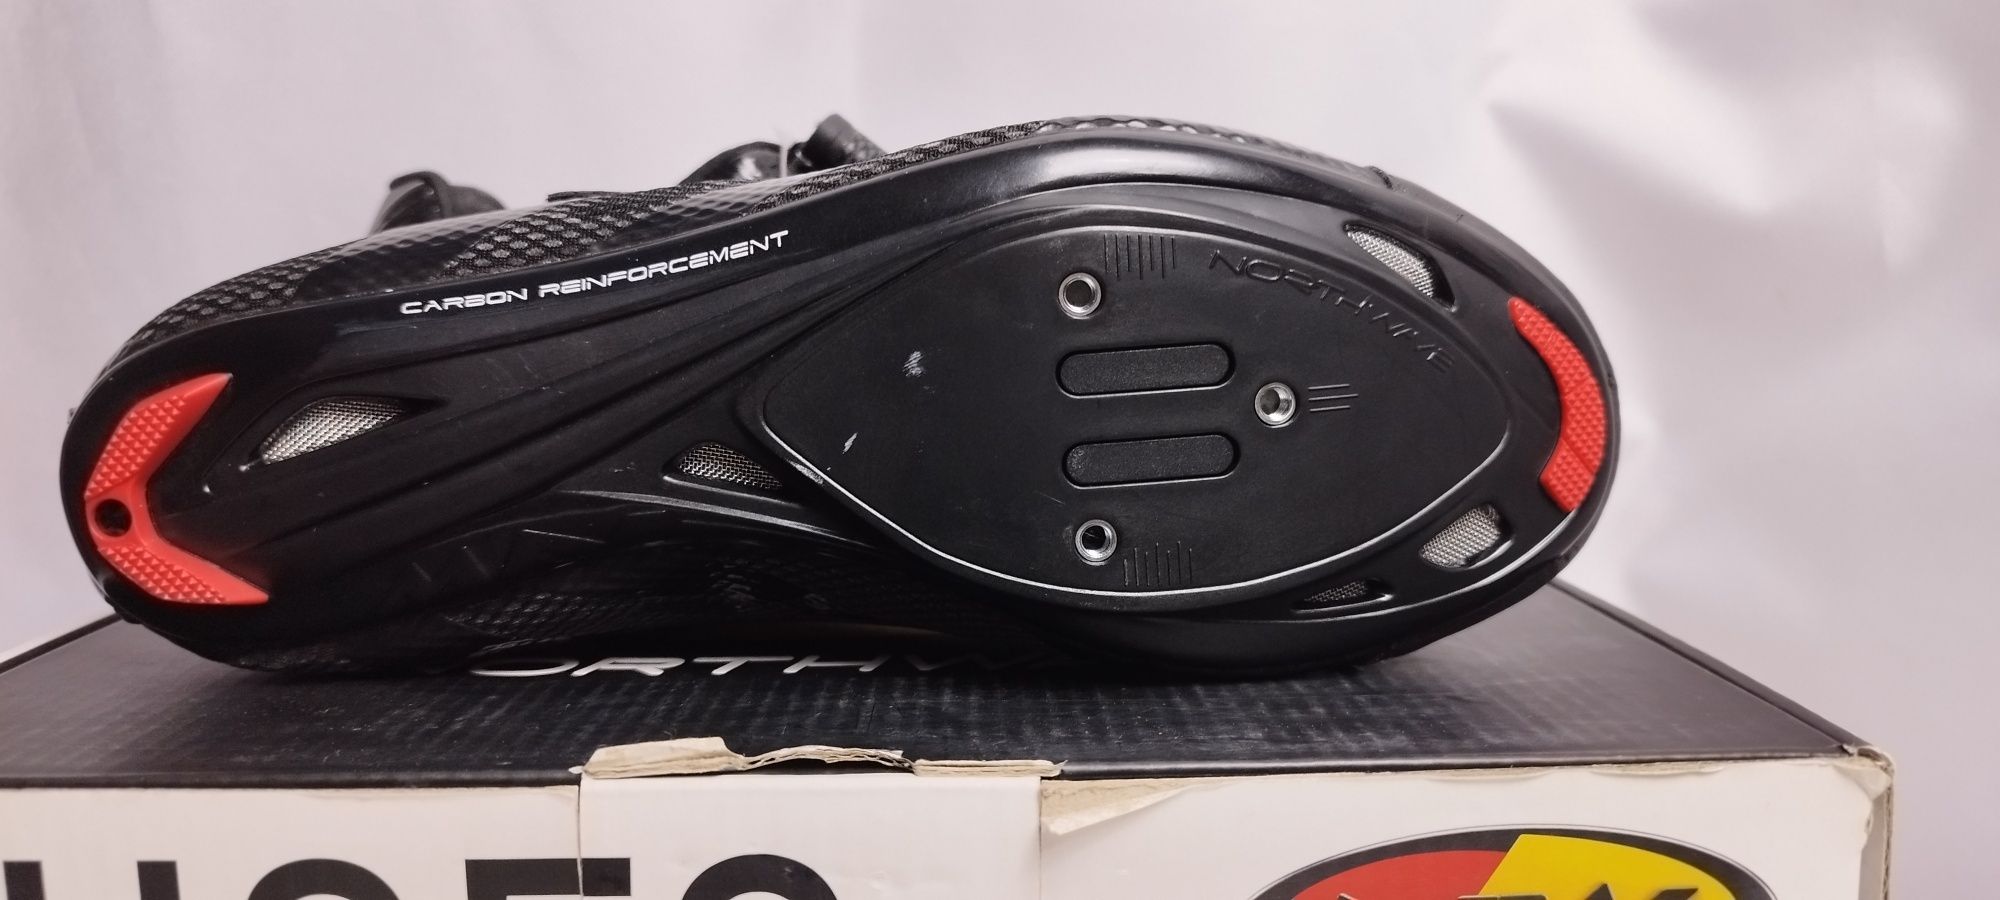 Nowe buty na rower szosowy Northwave Sonic 2 rozmiar 40 (26cm)